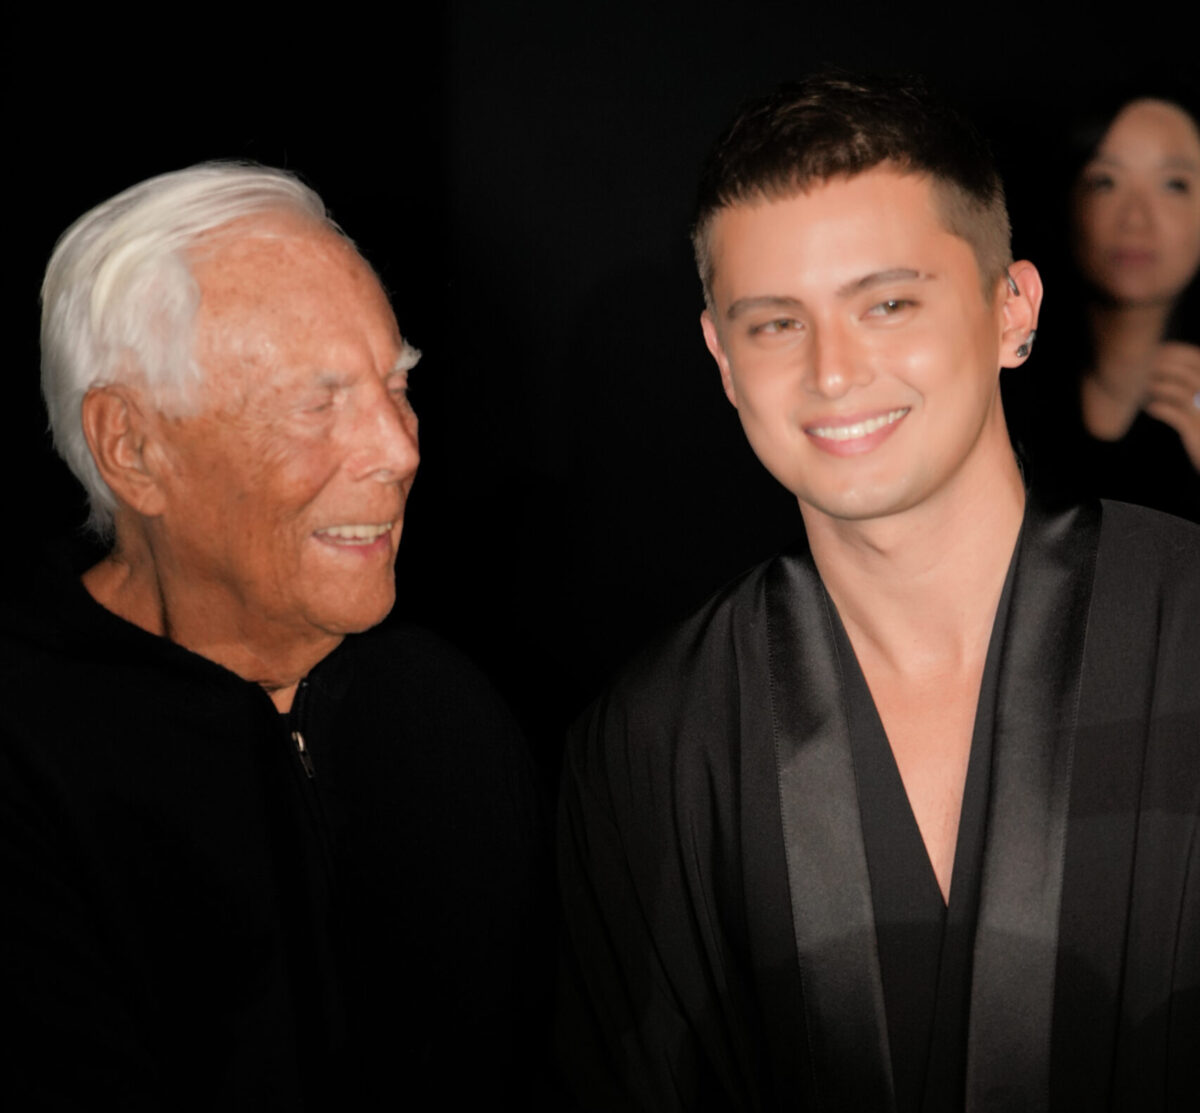 James Reid (right) with legendary fashion designer Giorgio Armani at the Emporio Armani show